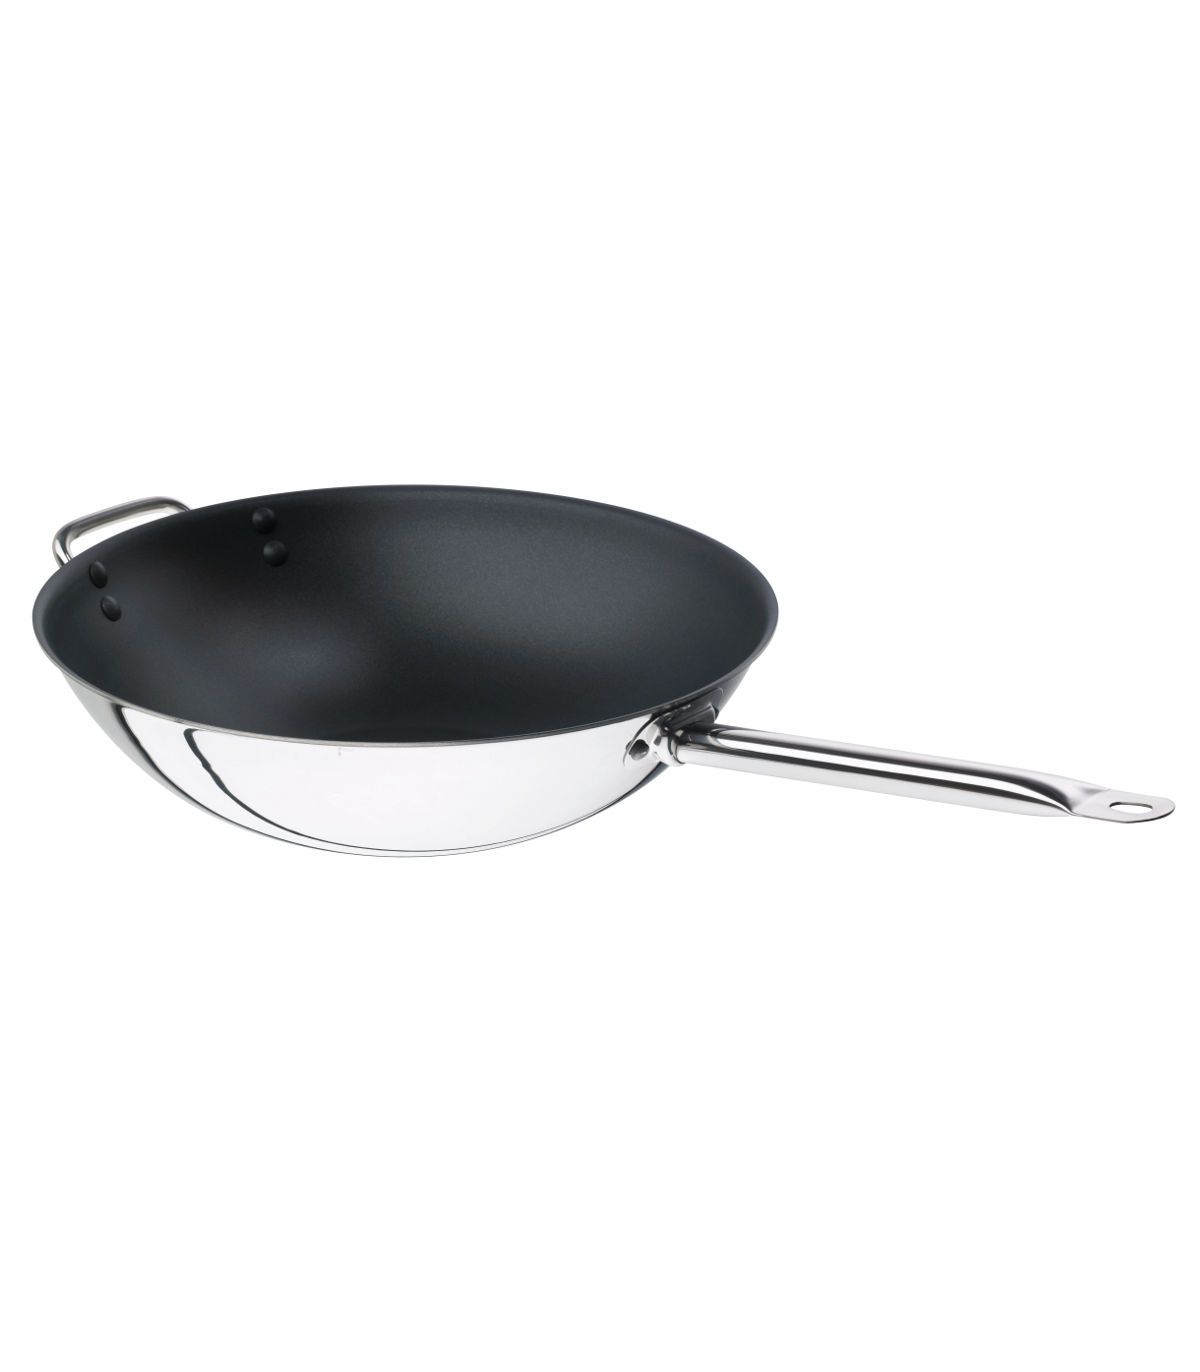 wok induction poêle à wok, couvercle, poignée, 30 cm, revêtement